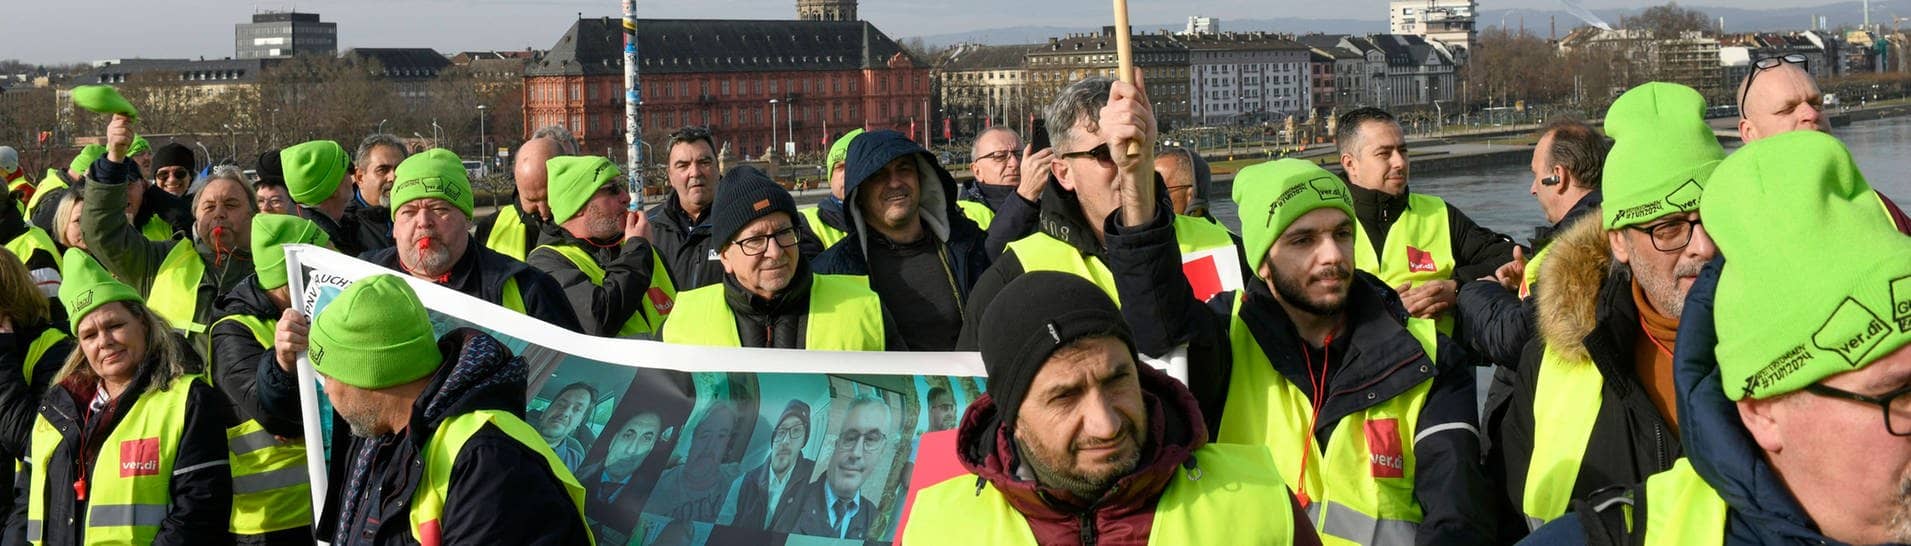 Streikende Beschäftigte im Öffentlichen Nahverkehr beim Protest in Mainz auf der Theodor-Heuss-Brücke.